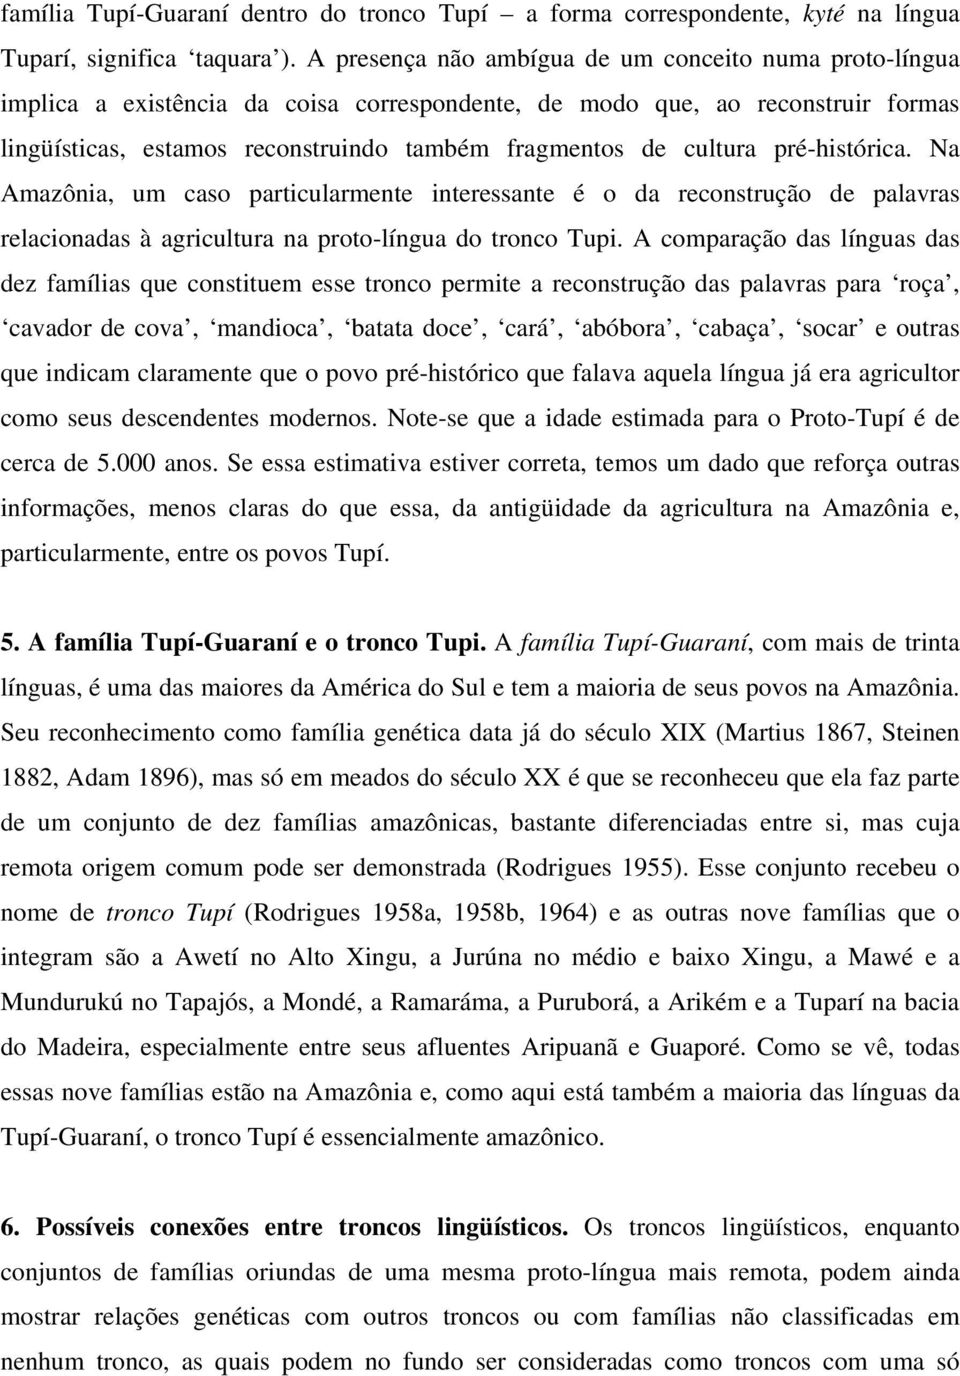 cultura pré-histórica. Na Amazônia, um caso particularmente interessante é o da reconstrução de palavras relacionadas à agricultura na proto-língua do tronco Tupi.